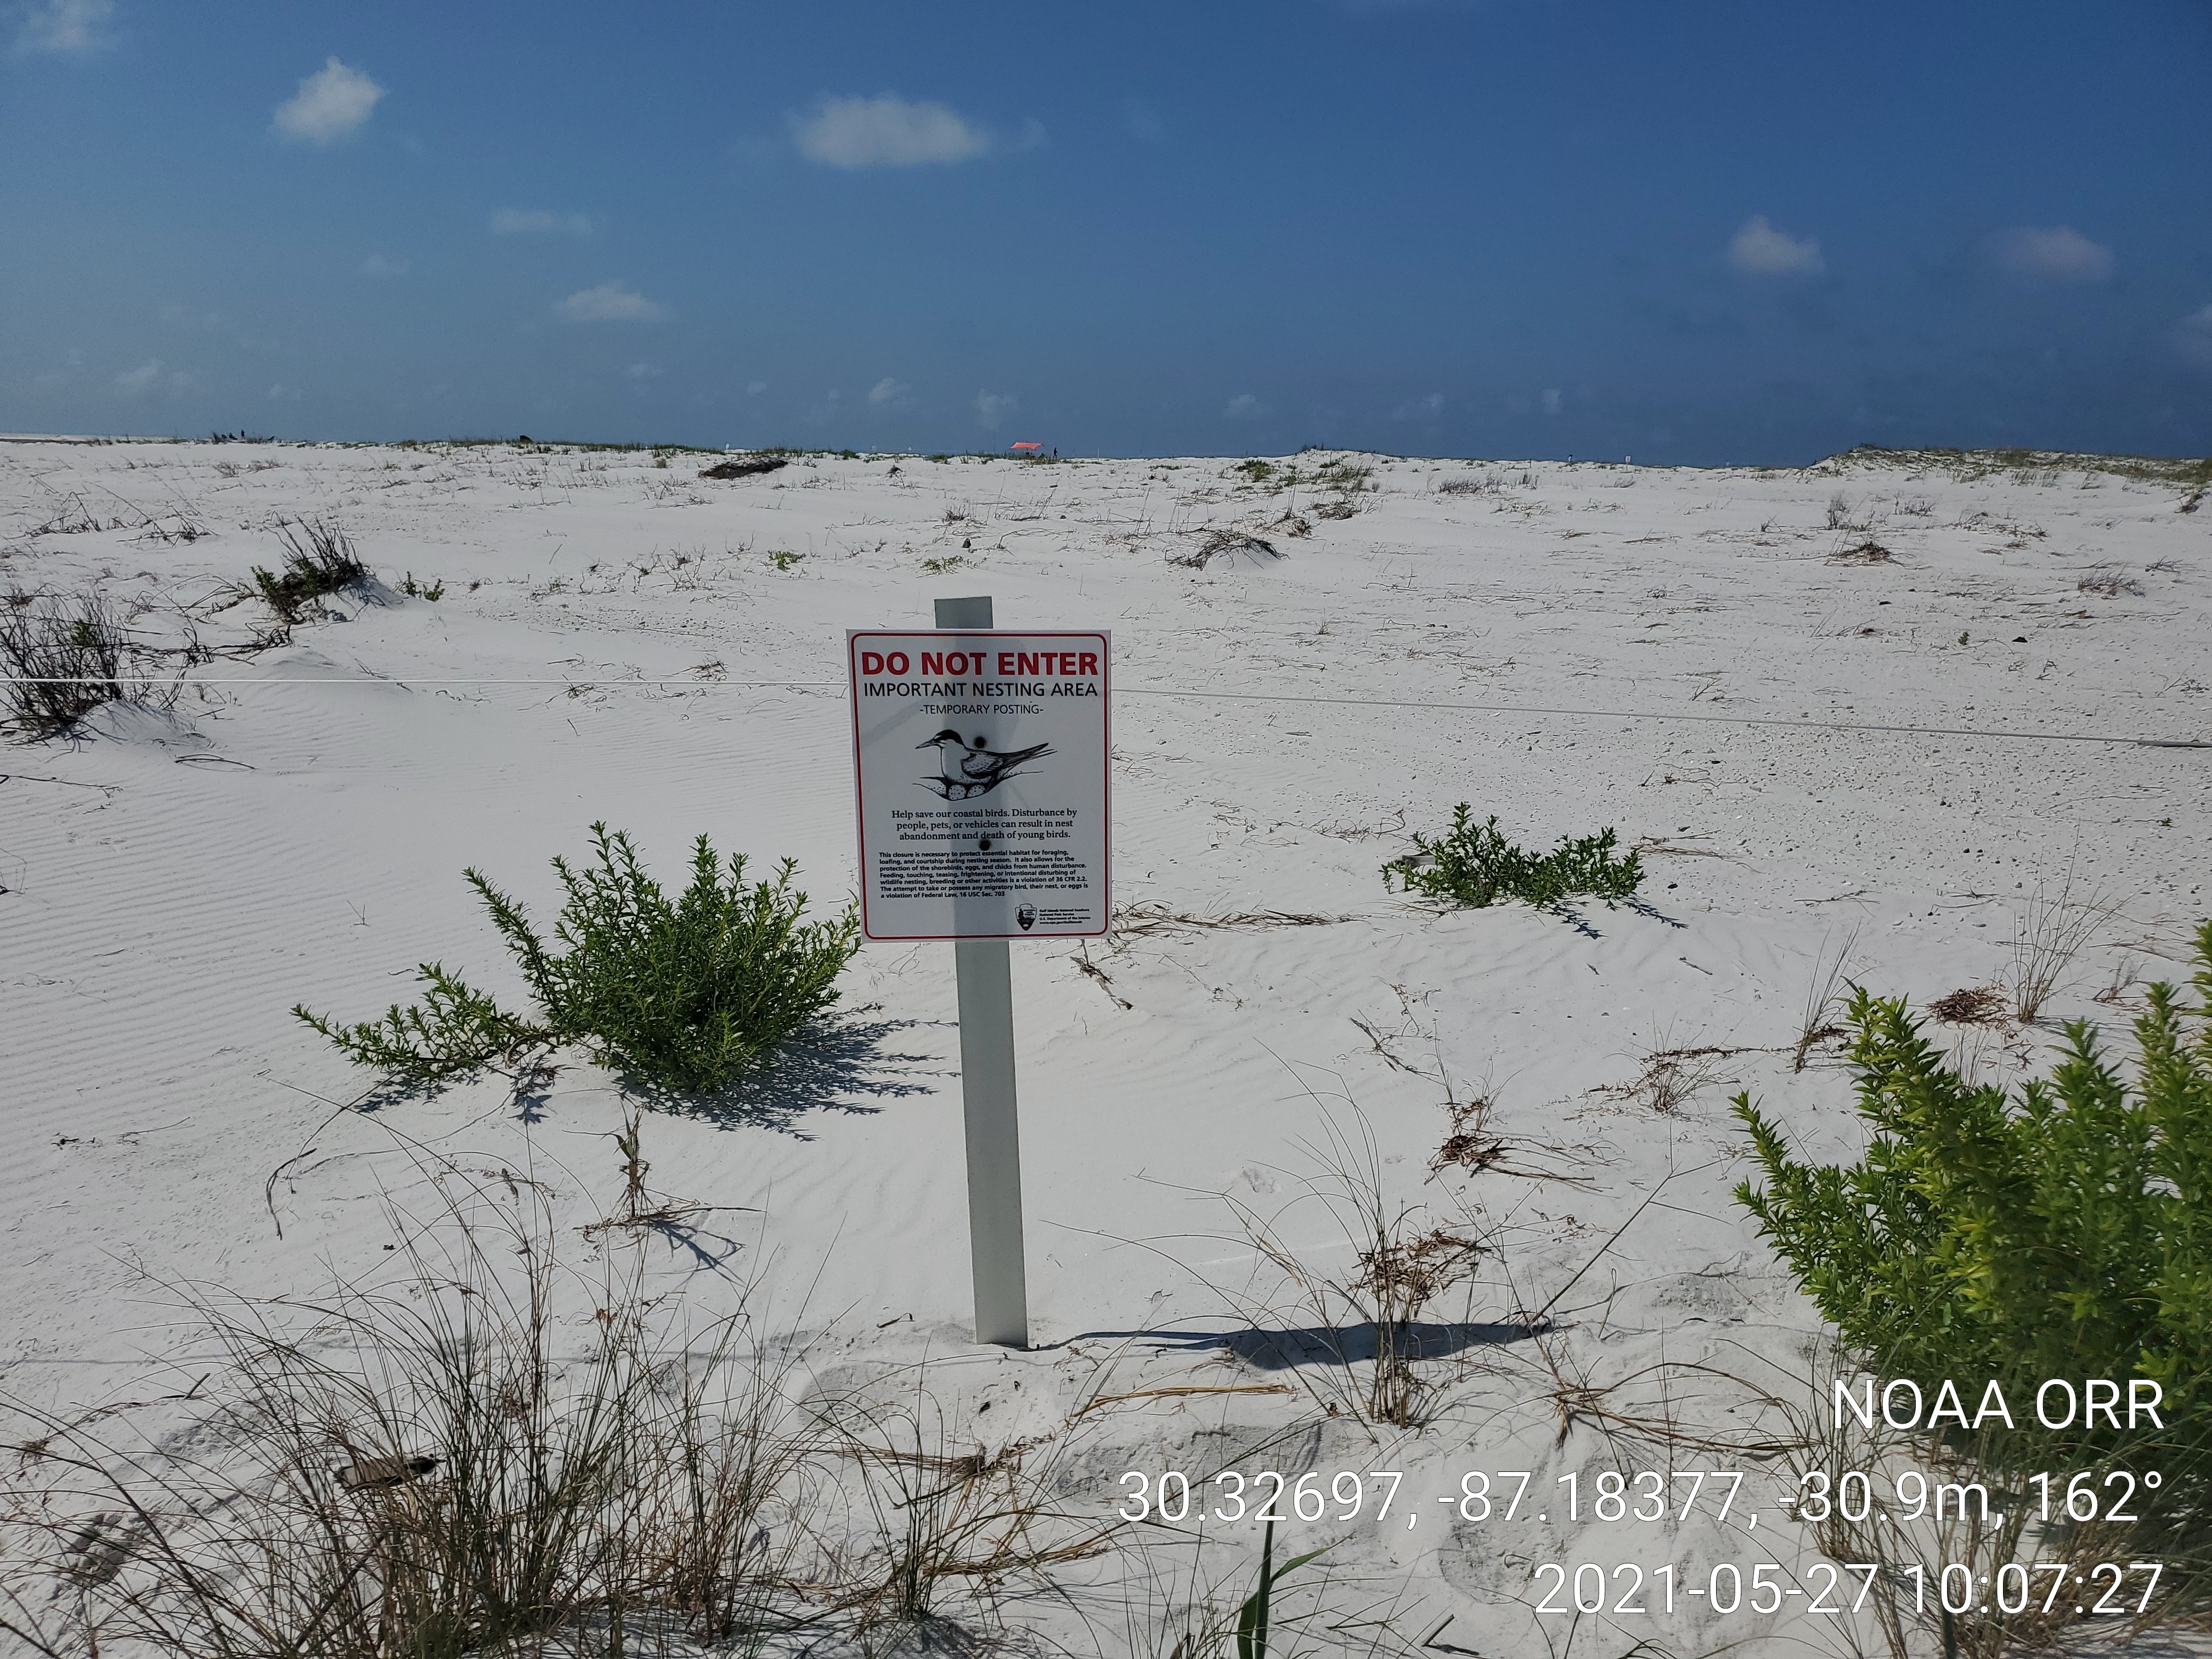 A "do not enter" sign on a beach.